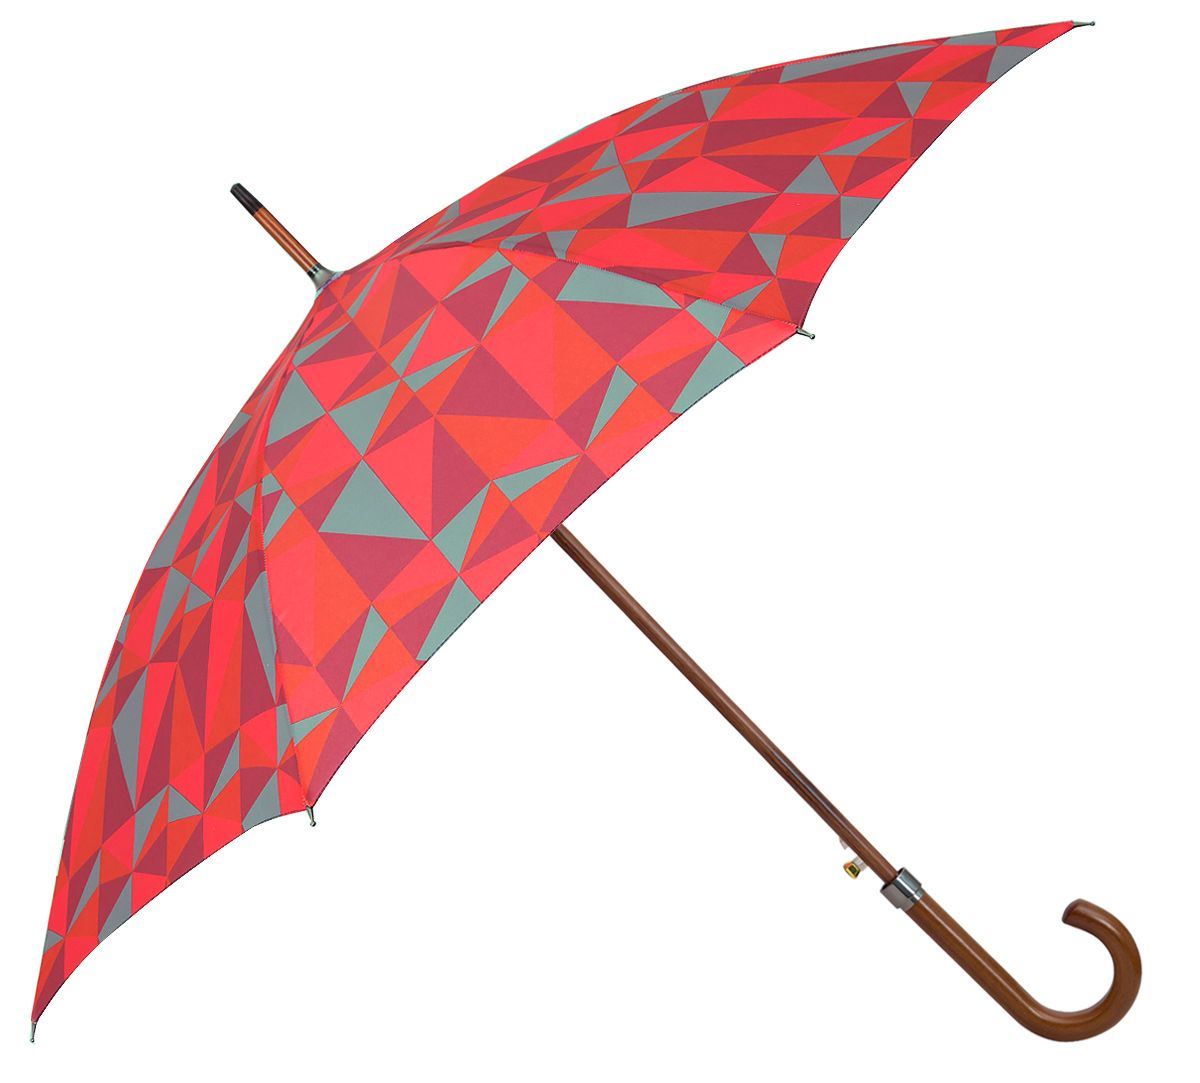 Quirky Umbrellas Online